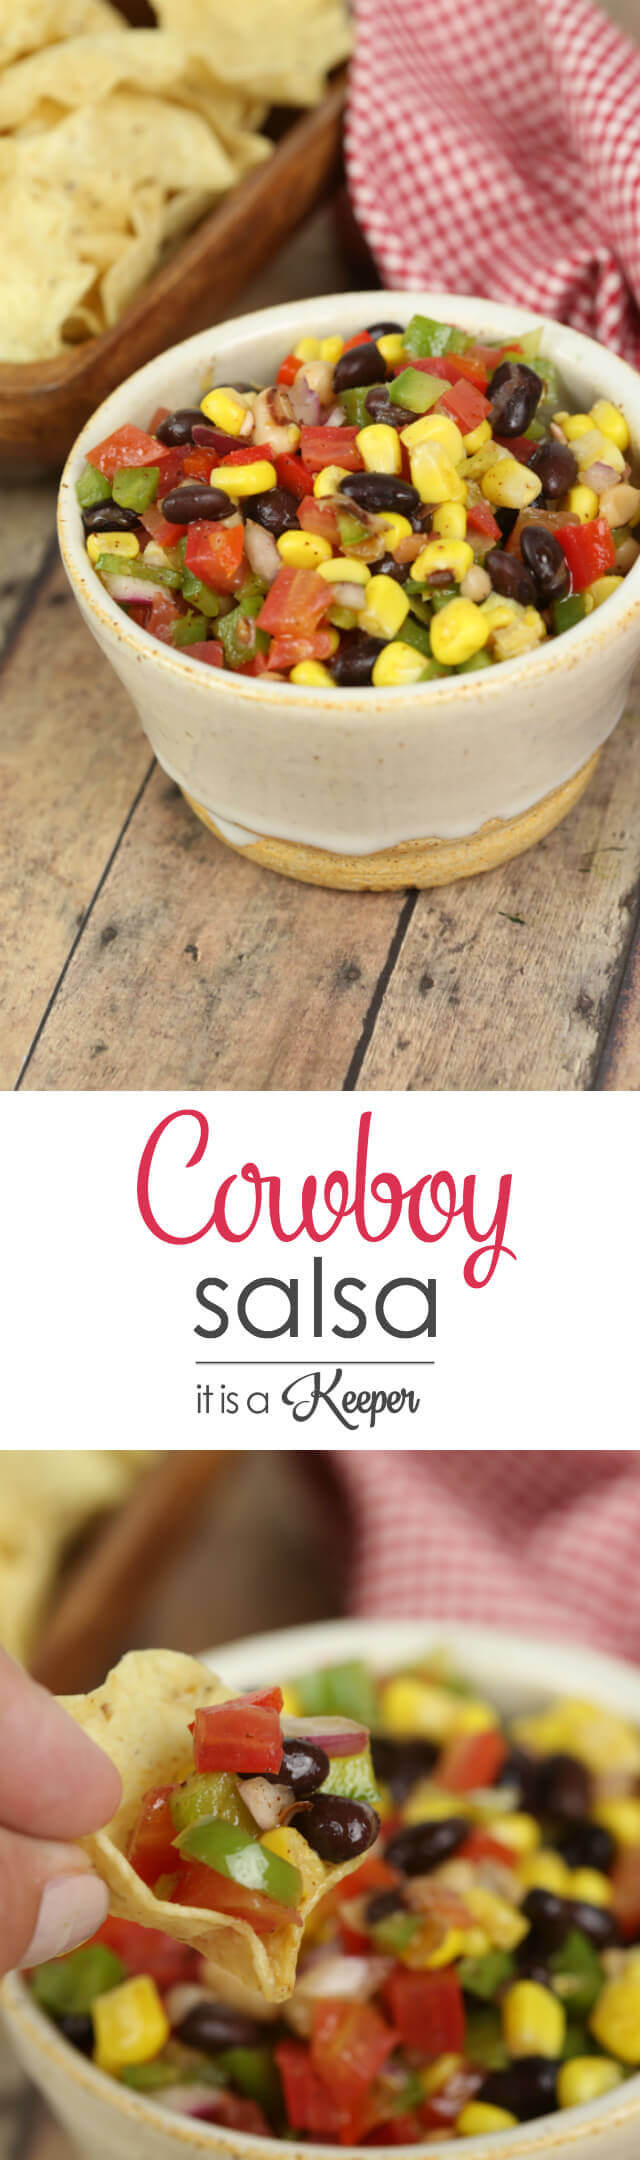 Cowboy Salsa Recipe
 Cowboy Salsa